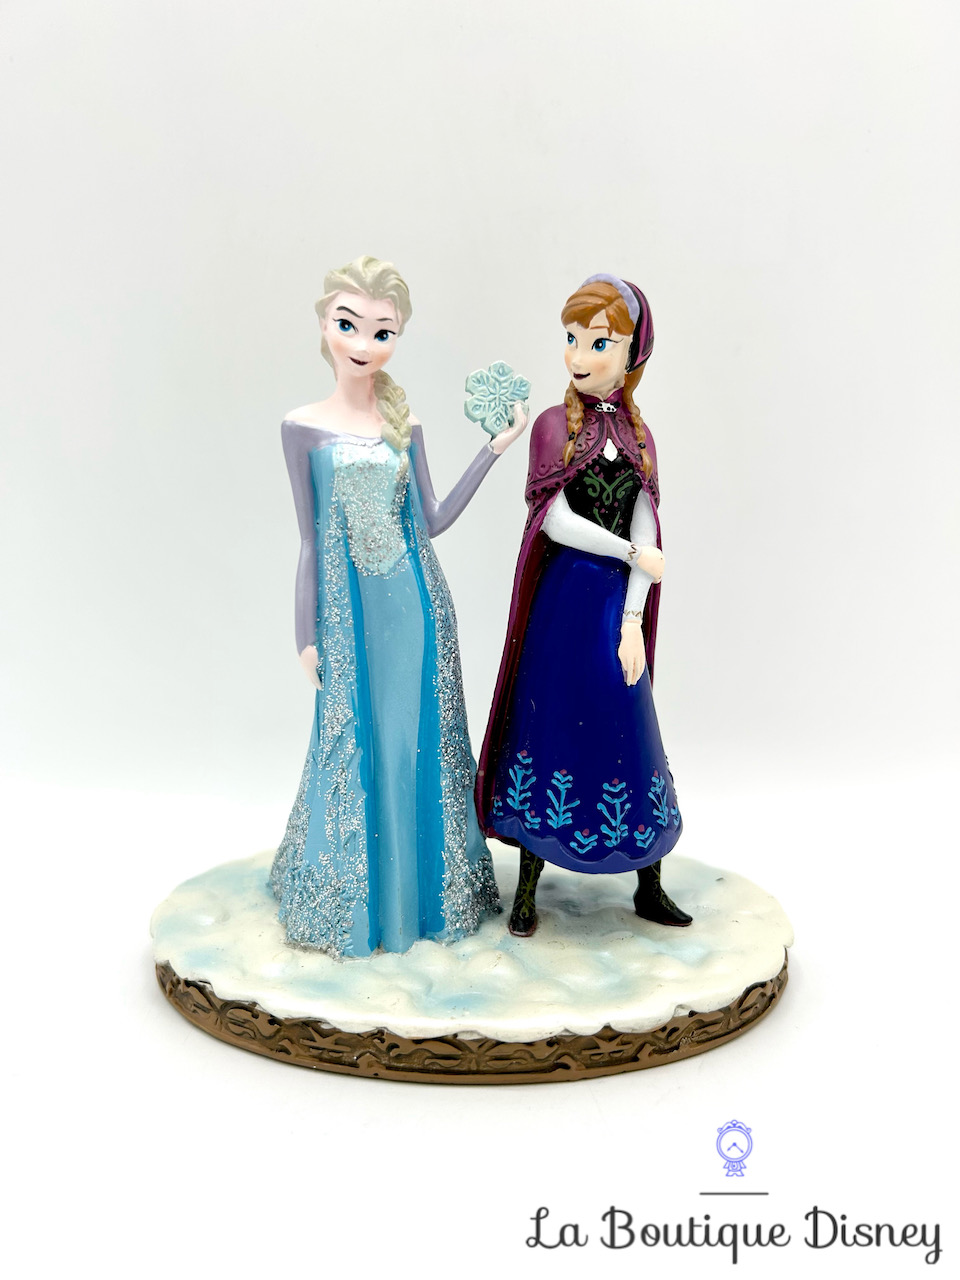 Figurine résine Anna Elsa La reine des neiges Disneyland Paris Disney princesses paillettes 12 cm